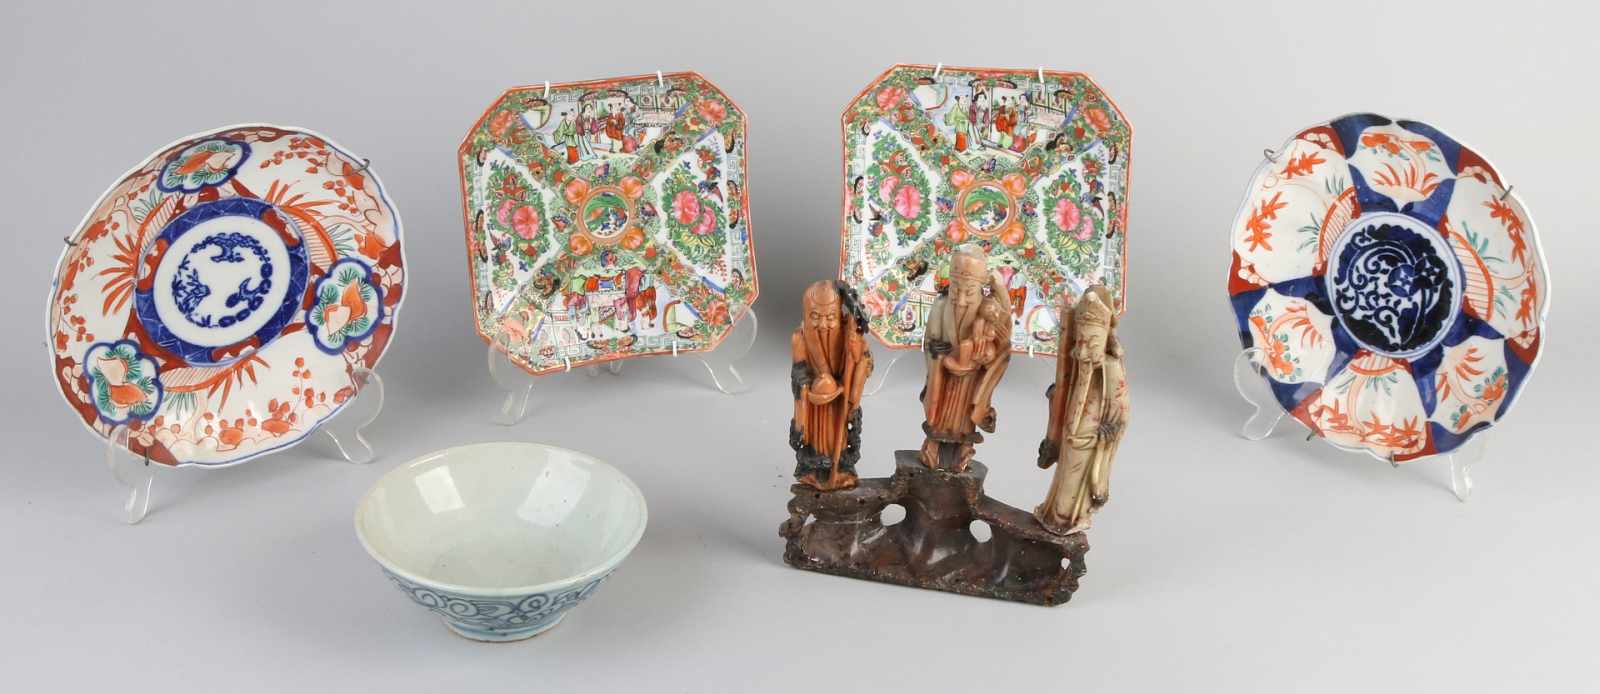 Sechs Teile chinesisches und japanisches Porzellan. Zwei kantonesische Teller, eine geklebte